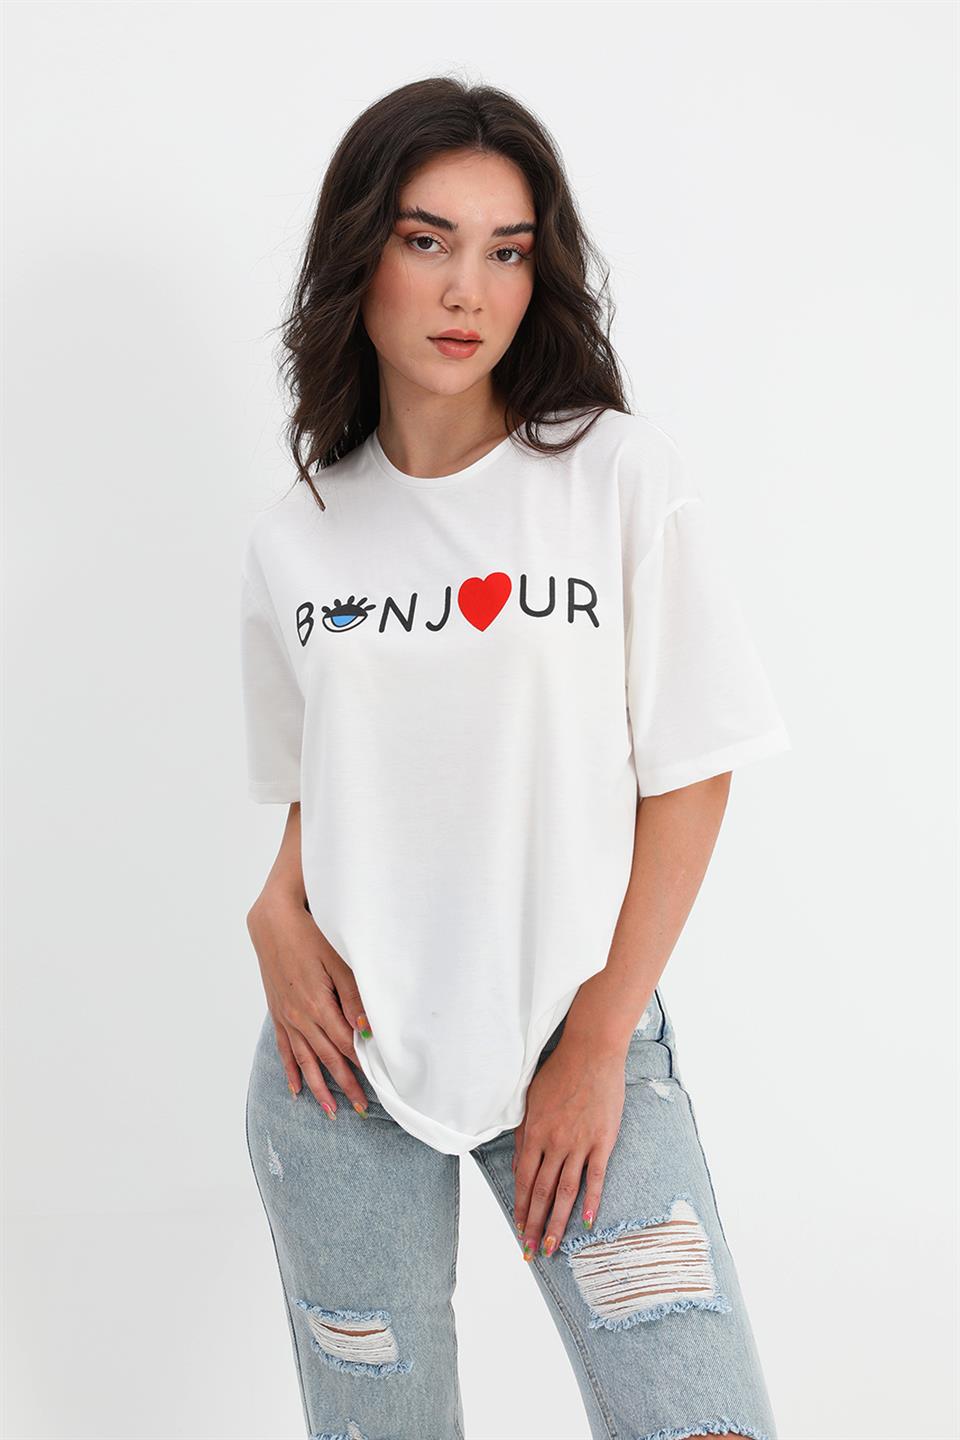 Women's T-shirt Crew Neck Bonjour Written - White - STREETMODE™